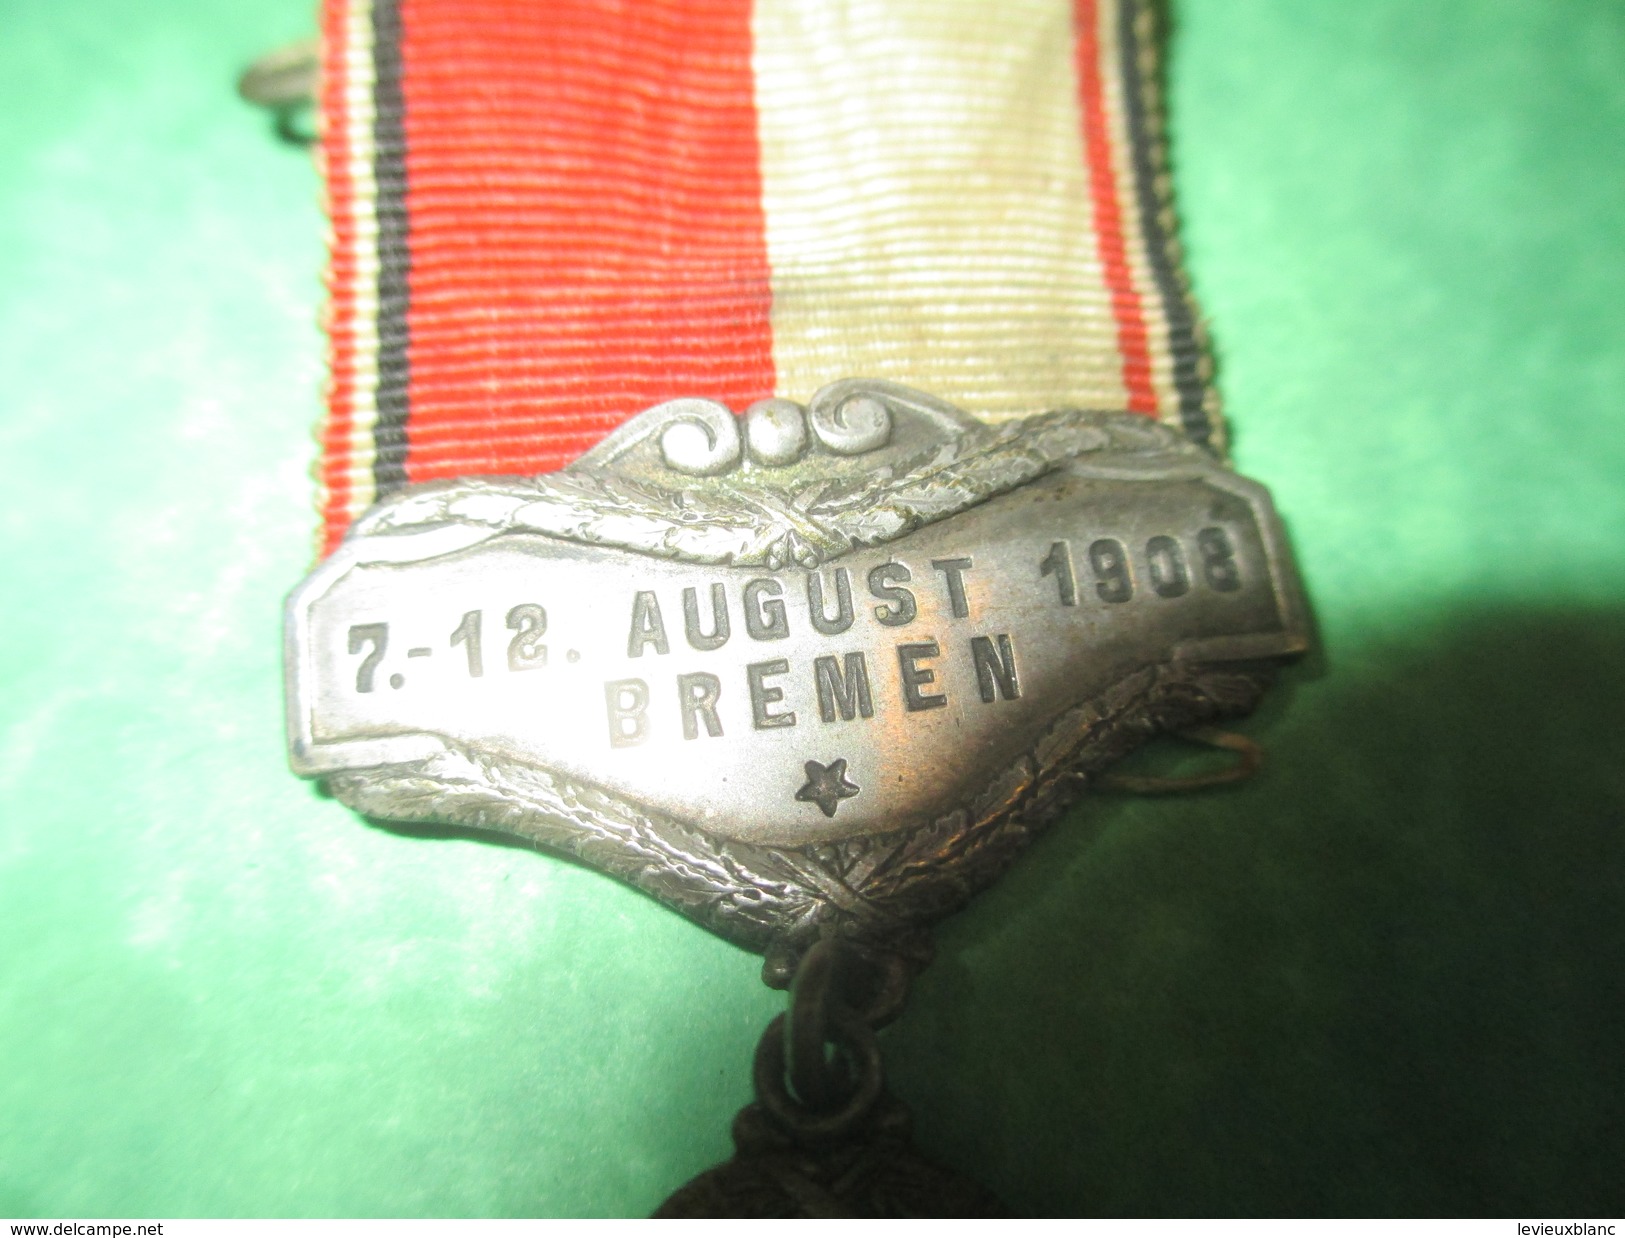 Médaille Pendante à épingle/Sports/Fédération Cycliste Allemande/ BREME//1908          SPO160 - Wielrennen